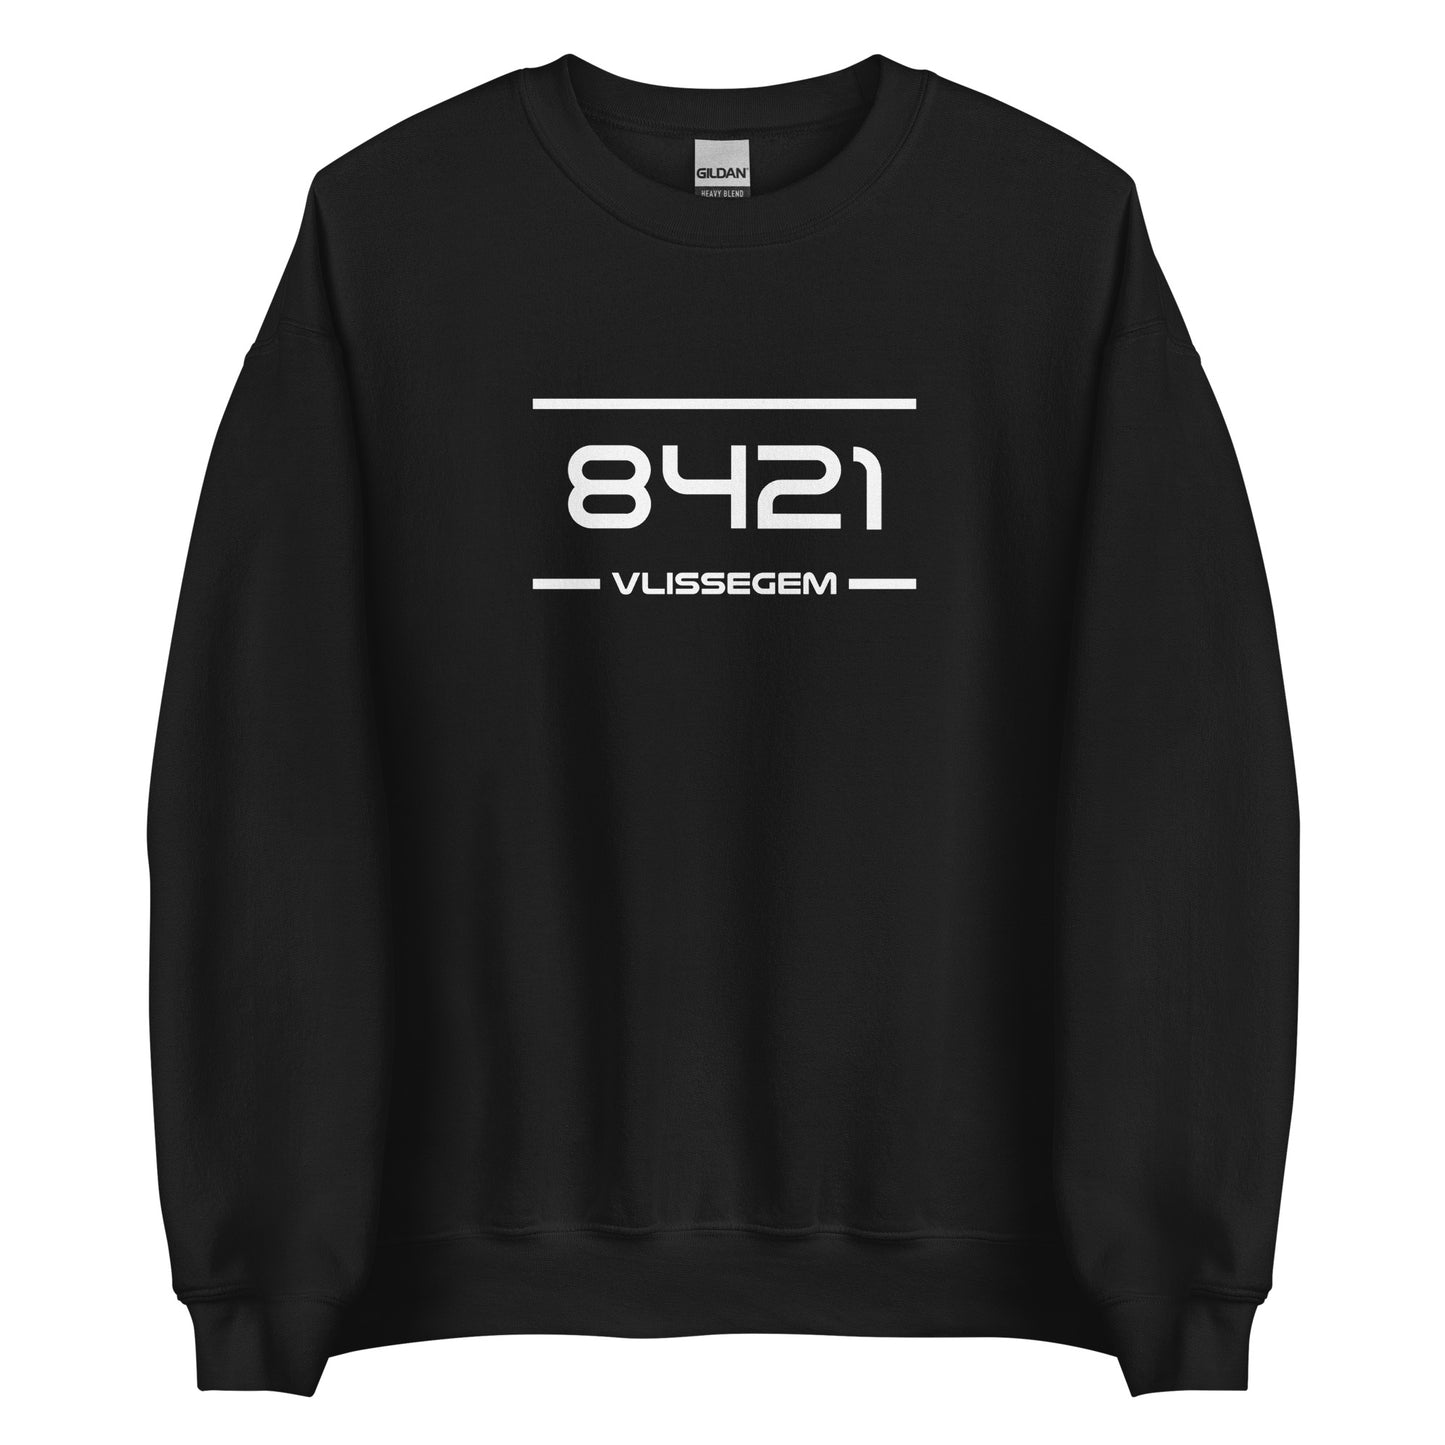 Sweater - 8421 - Vlissegem (M/V)